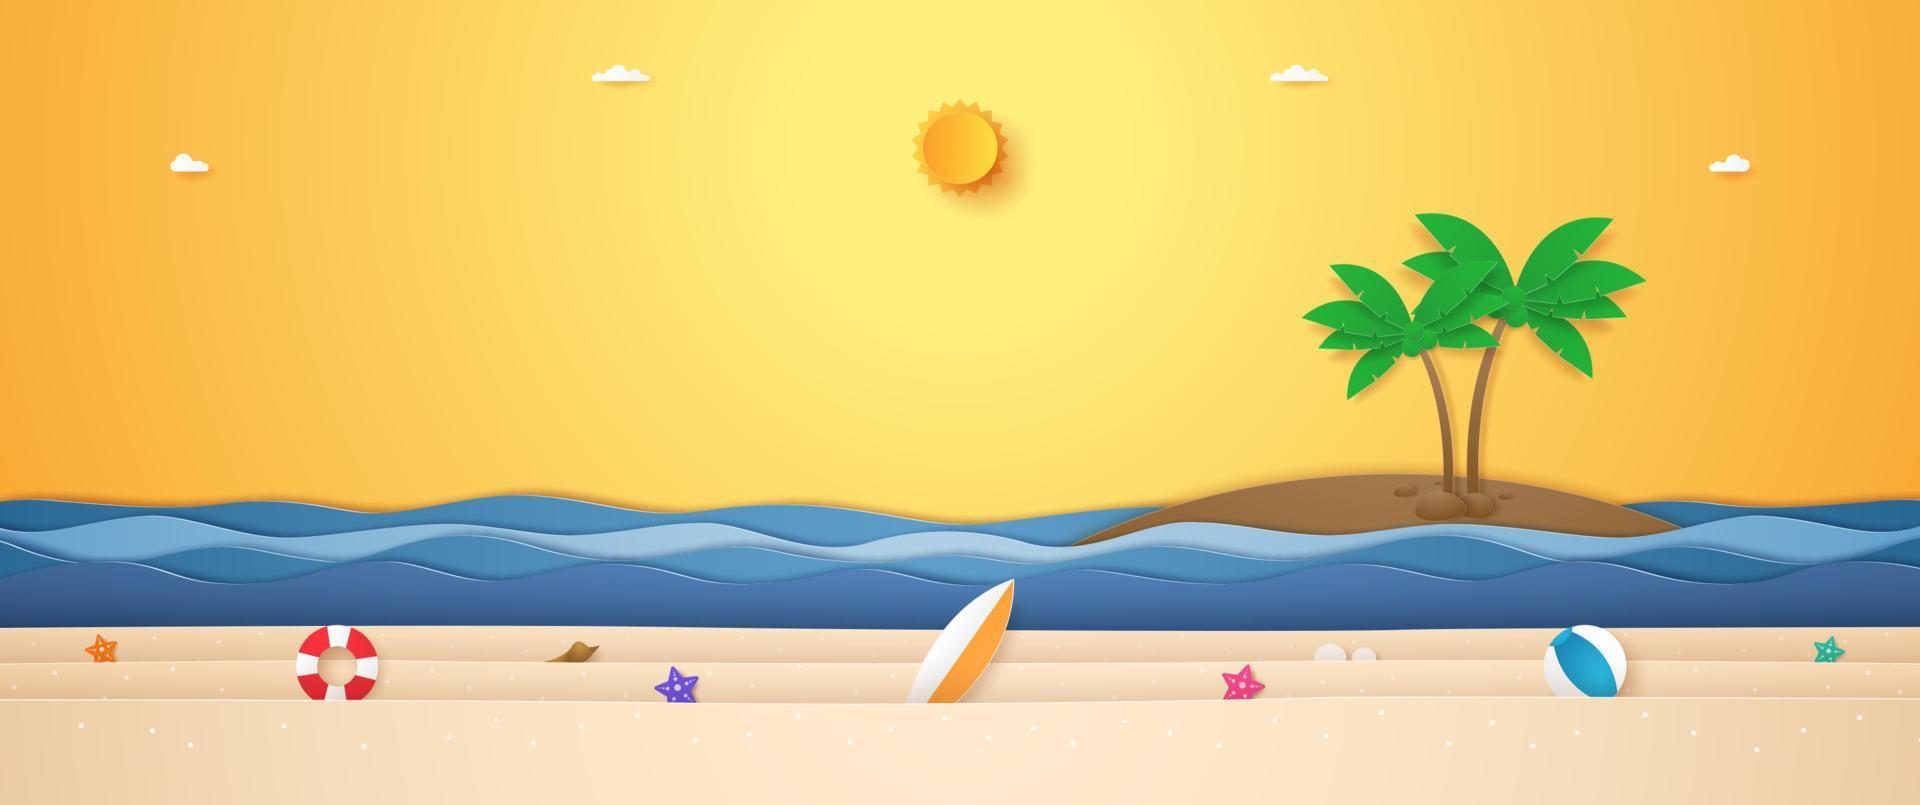 paysage de cocotier sur l'île, mer ondulée et trucs d'été sur la plage avec un soleil éclatant dans un ciel ensoleillé pour l'heure d'été dans un style art papier vecteur